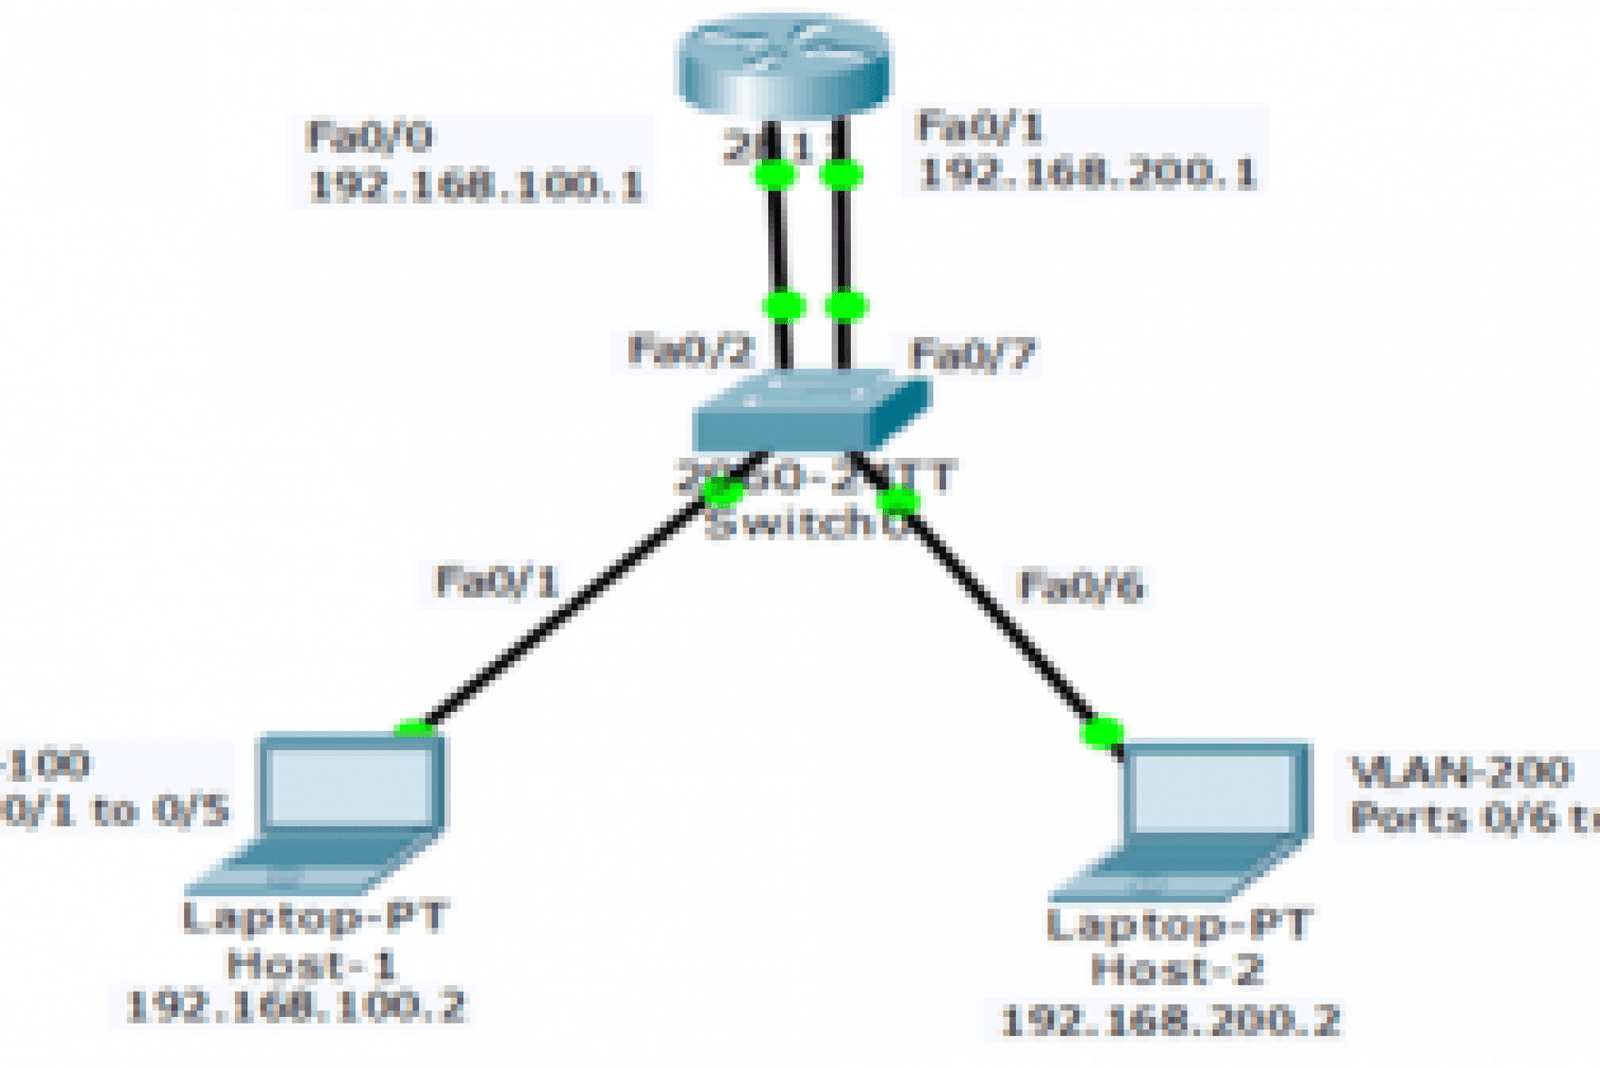 Legacy Inter-VLAN routing